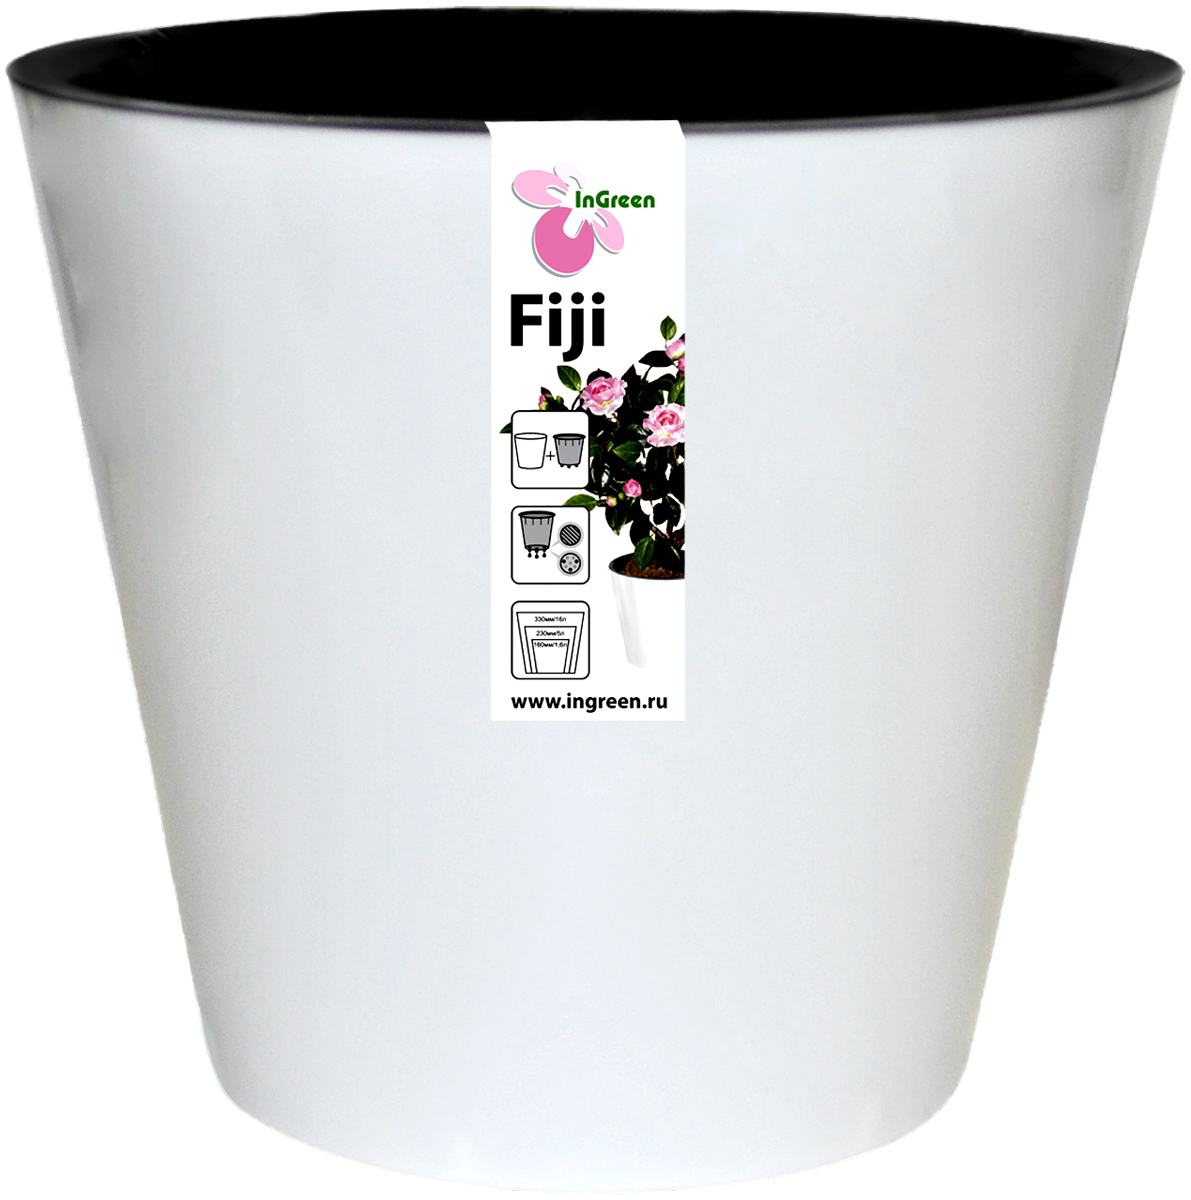 фото Горшок для цветов InGreen "Фиджи", с ситемой атополива, цвет: белый, диаметр 16 см